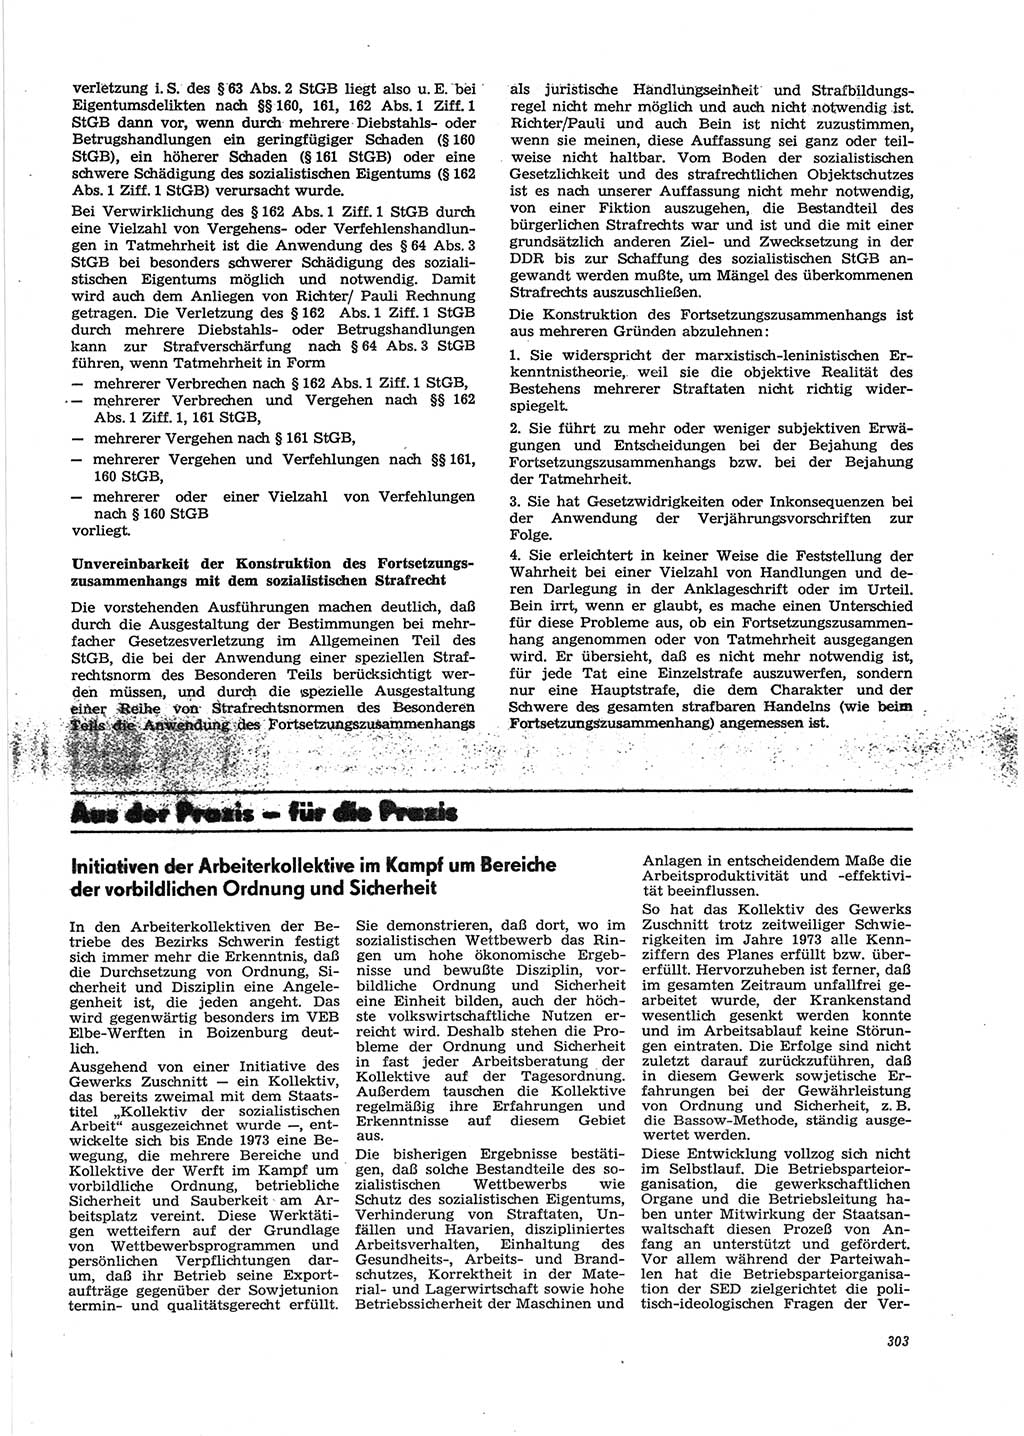 Neue Justiz (NJ), Zeitschrift für Recht und Rechtswissenschaft [Deutsche Demokratische Republik (DDR)], 28. Jahrgang 1974, Seite 303 (NJ DDR 1974, S. 303)